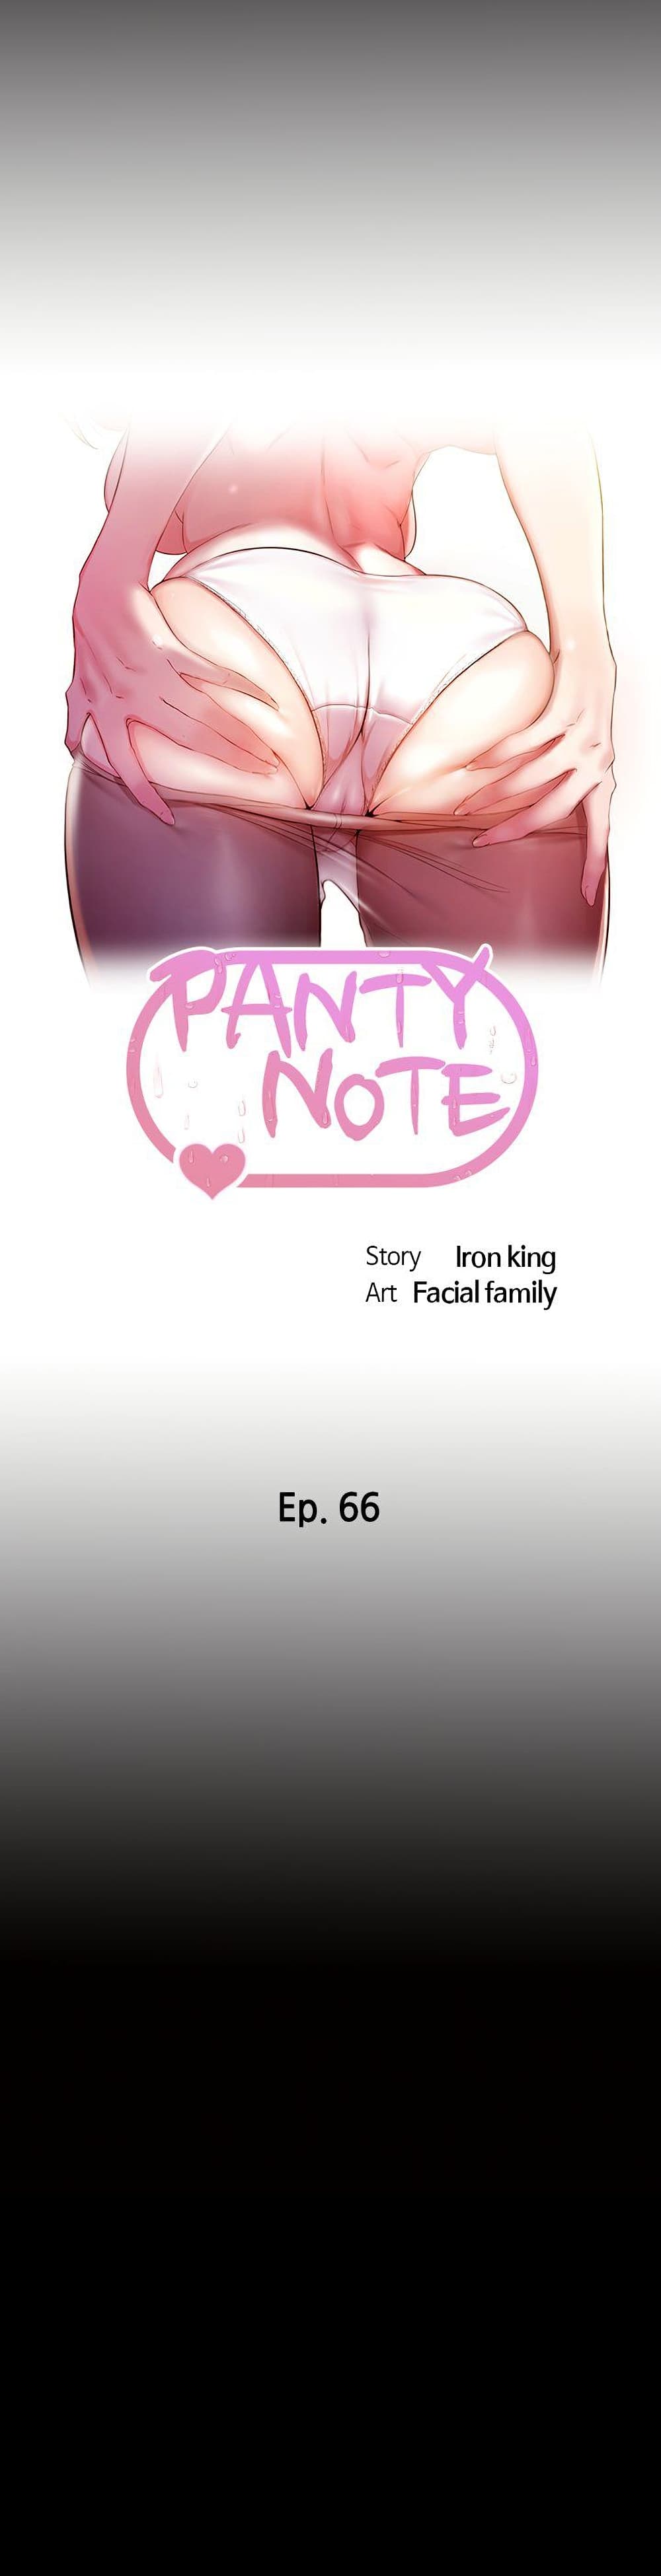 Panty Note01